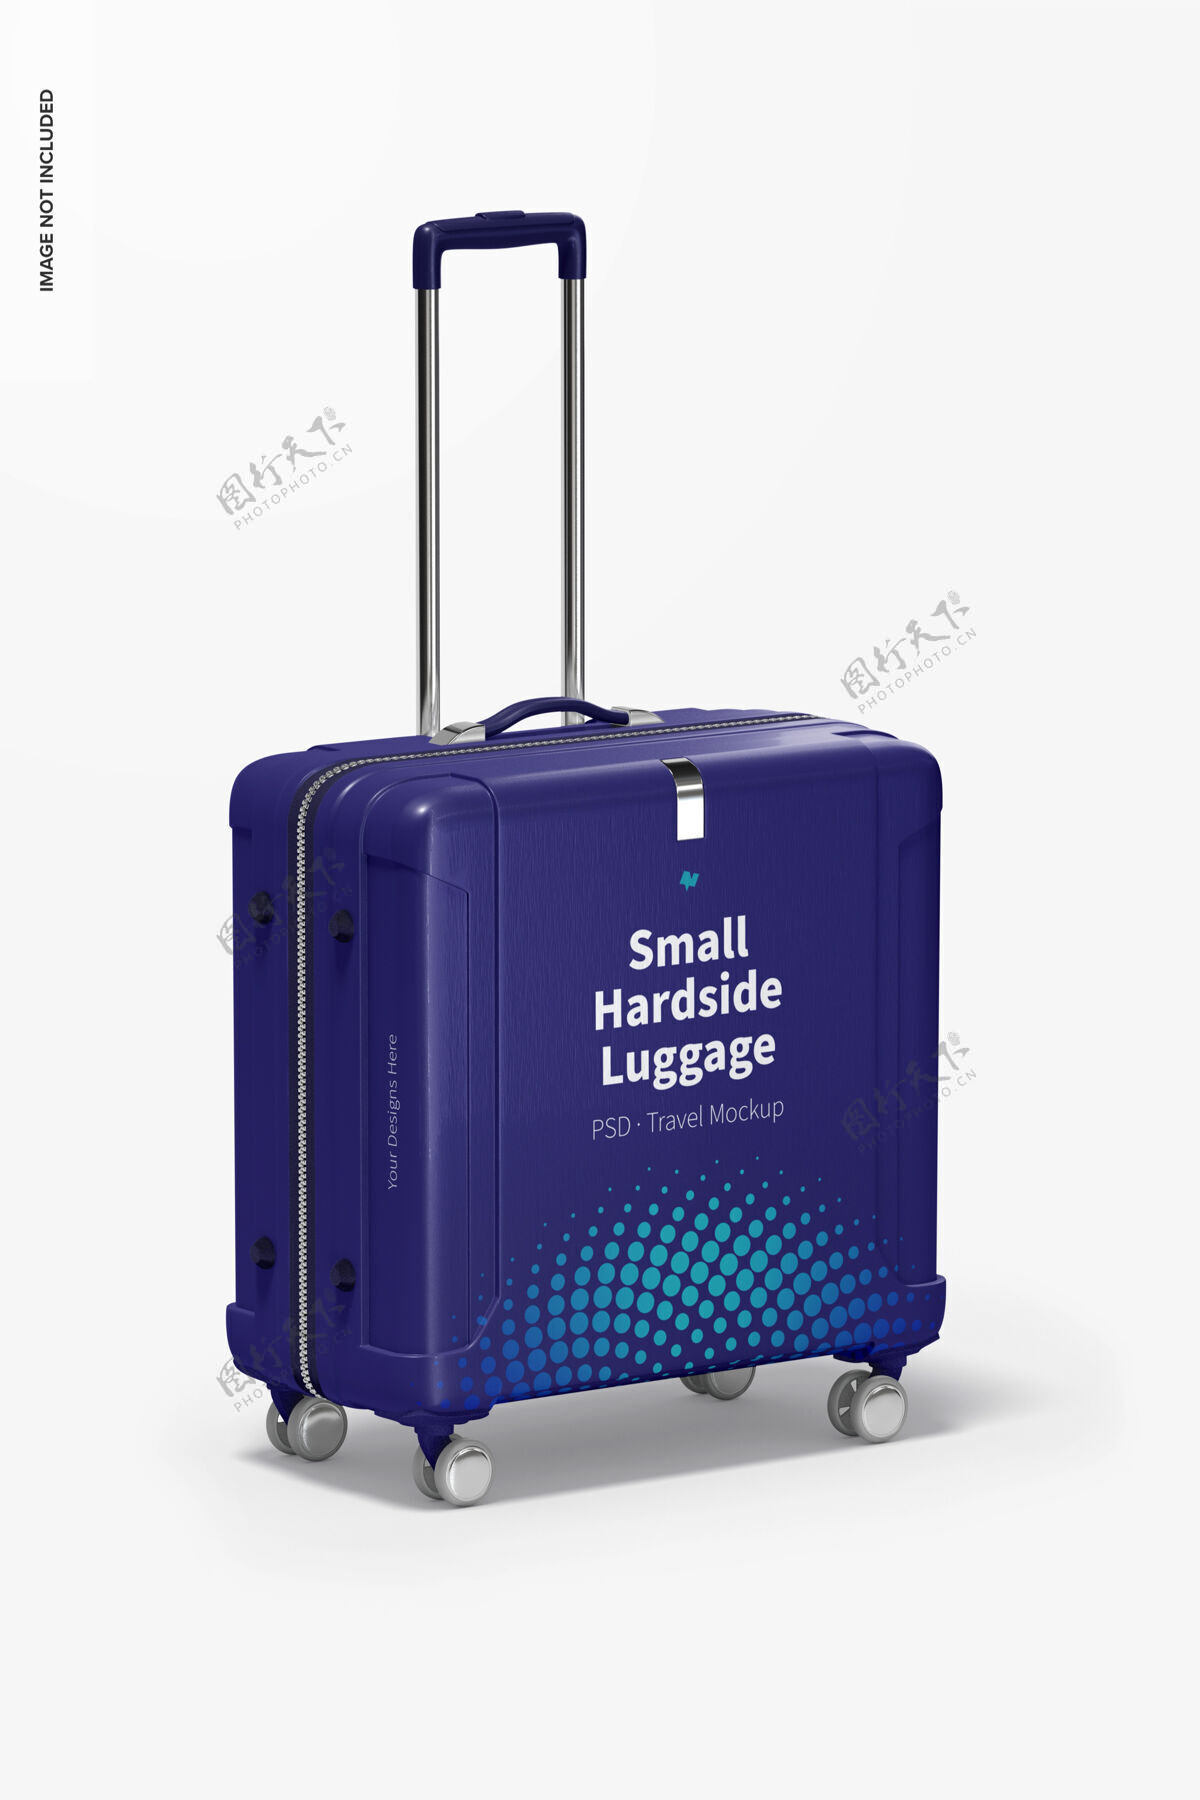 旅行小型硬面行李模型 透视图模型旅行